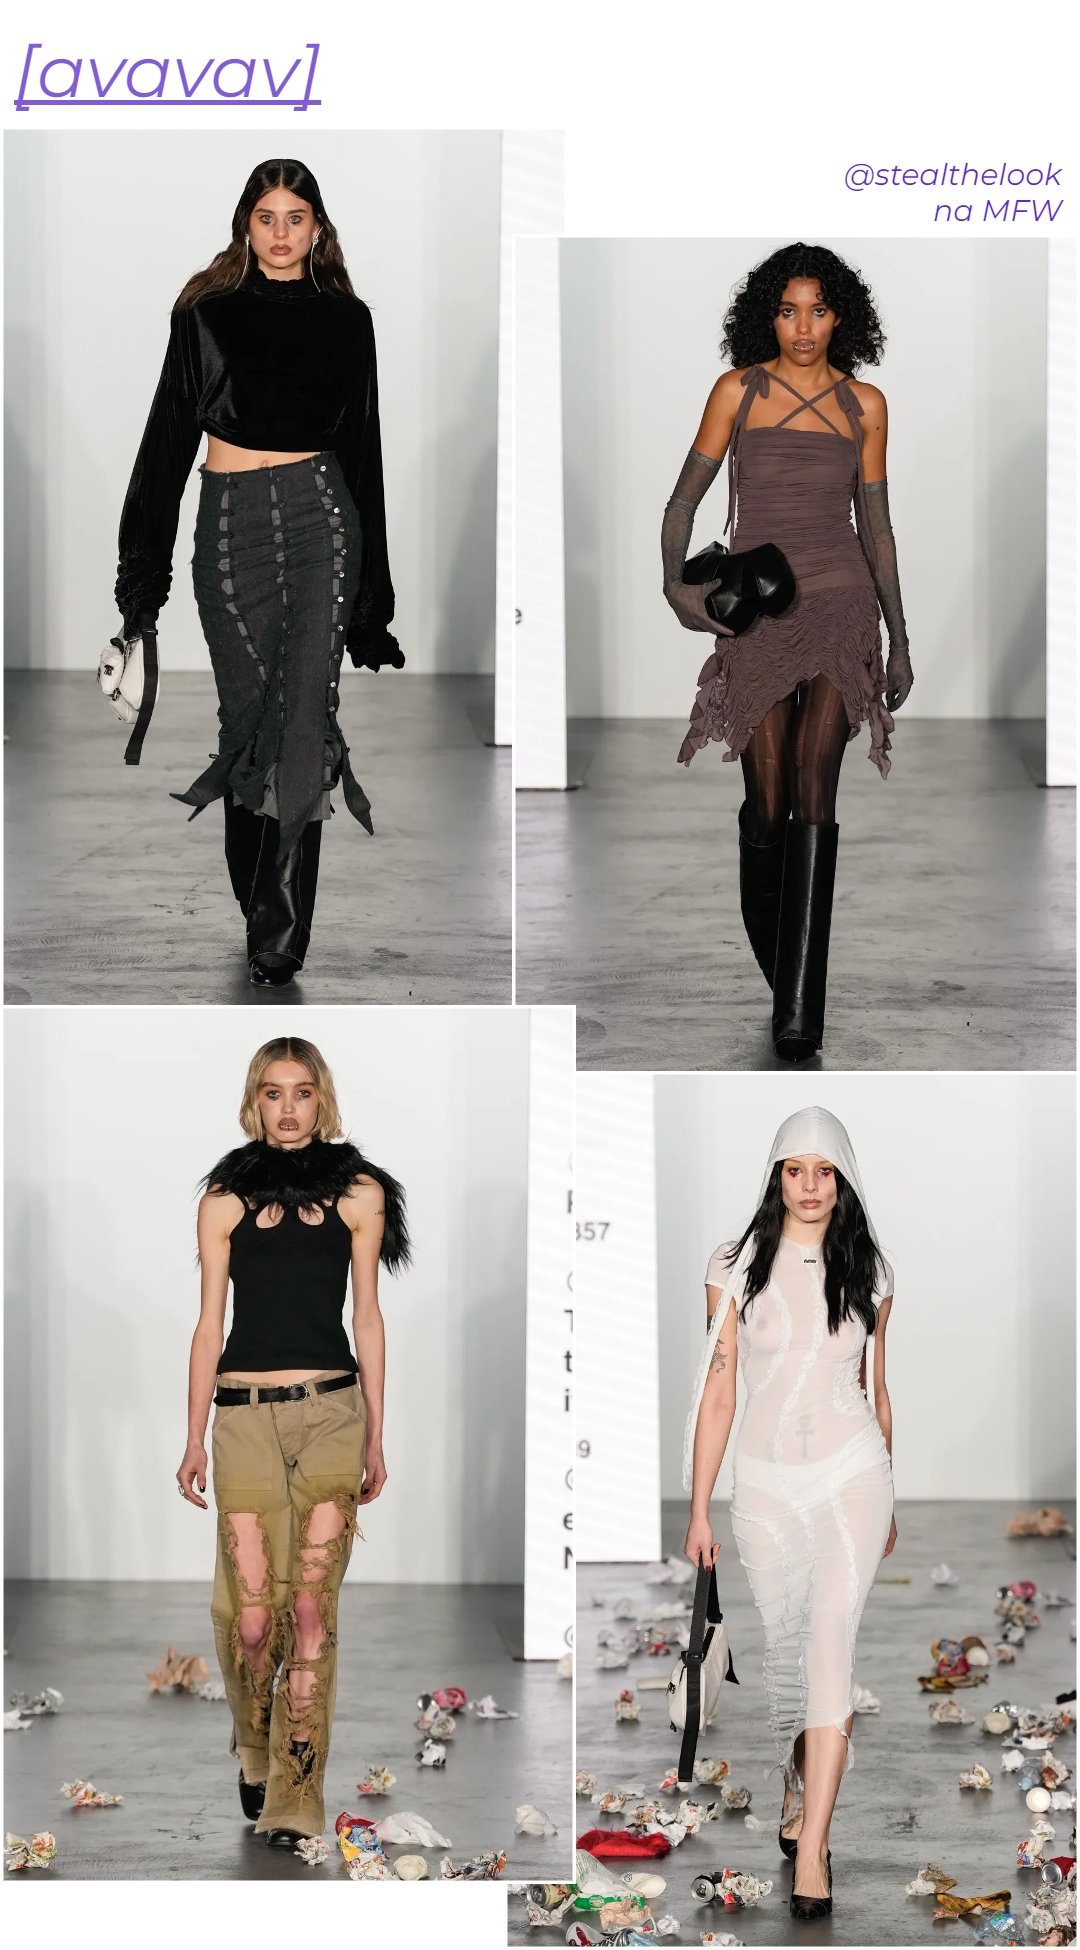 AVAVAV - roupas diversas - Semana de moda de Milão - inverno - colagem com 4 fotos diferentes da modelo andando - https://stealthelook.com.br